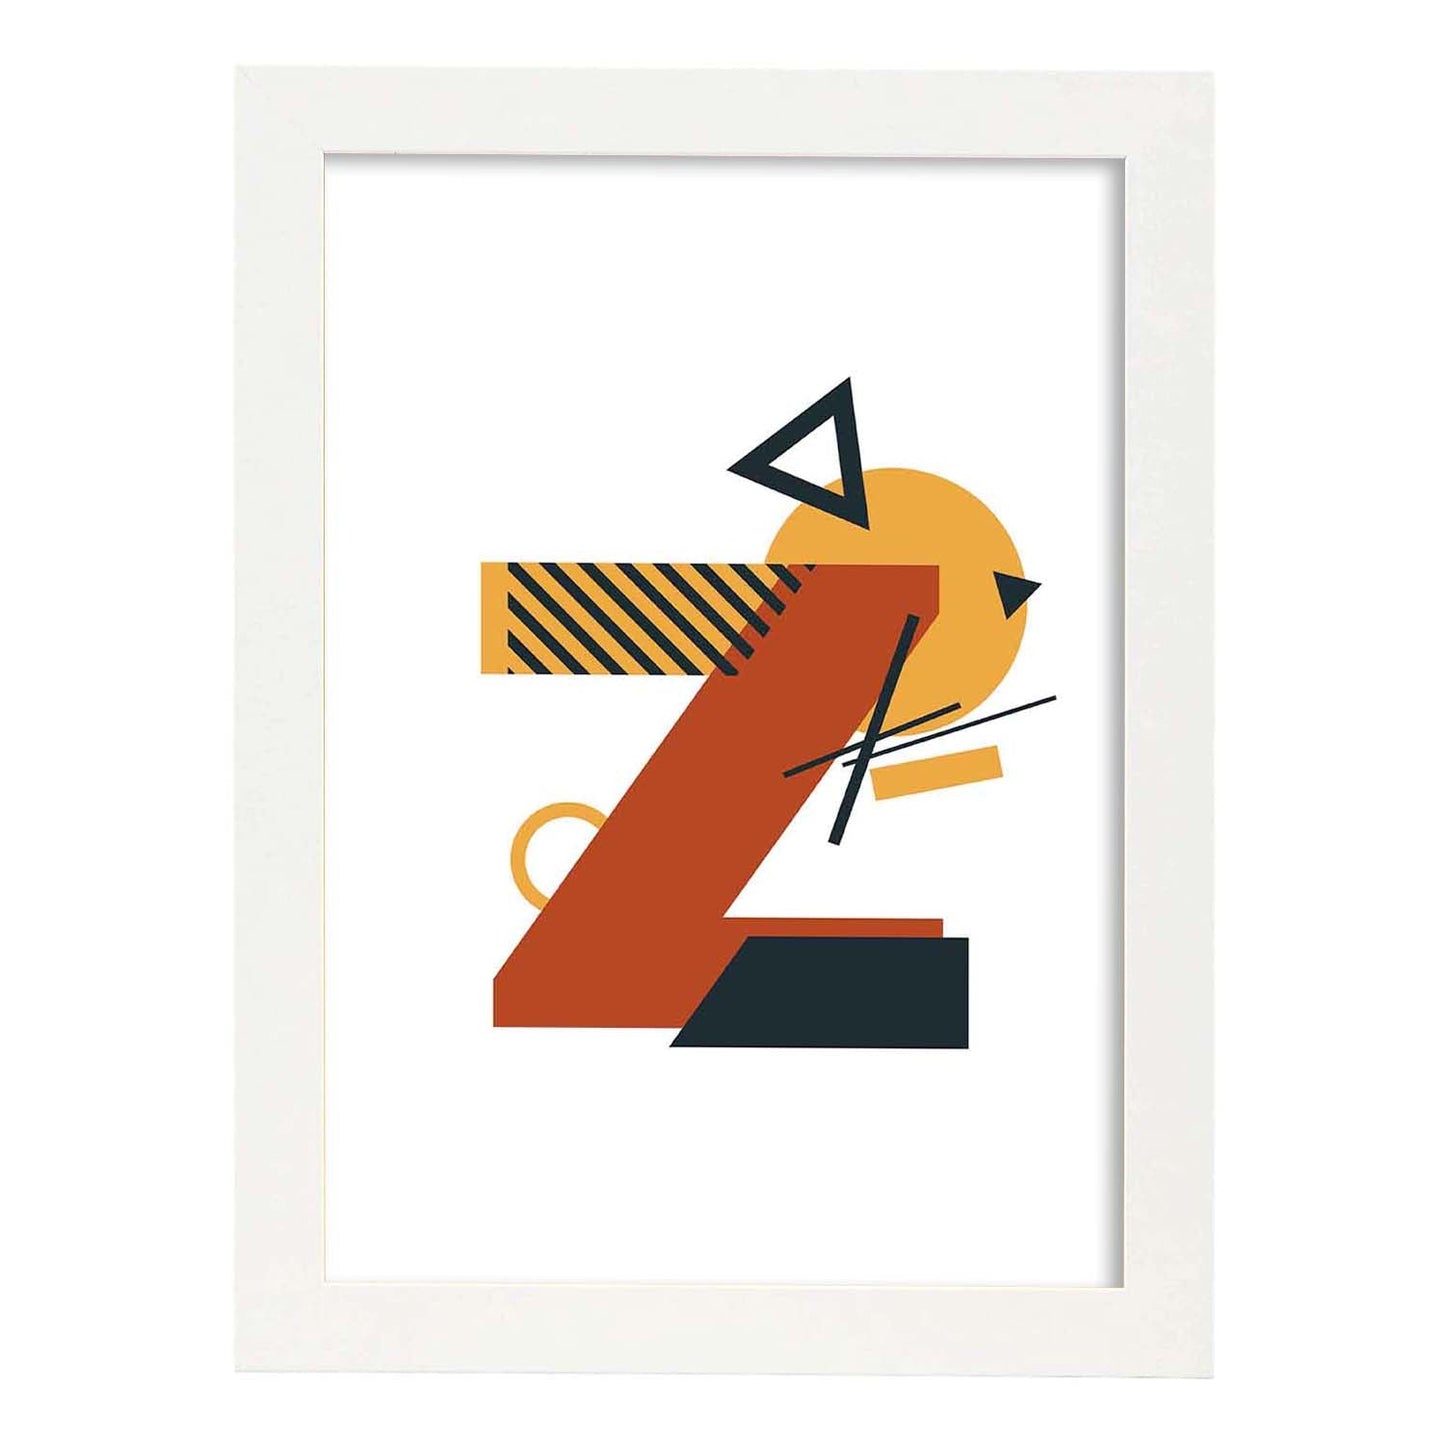 Poster de letra Z. Lámina estilo Geometria con formas con imágenes del alfabeto.-Artwork-Nacnic-A4-Marco Blanco-Nacnic Estudio SL